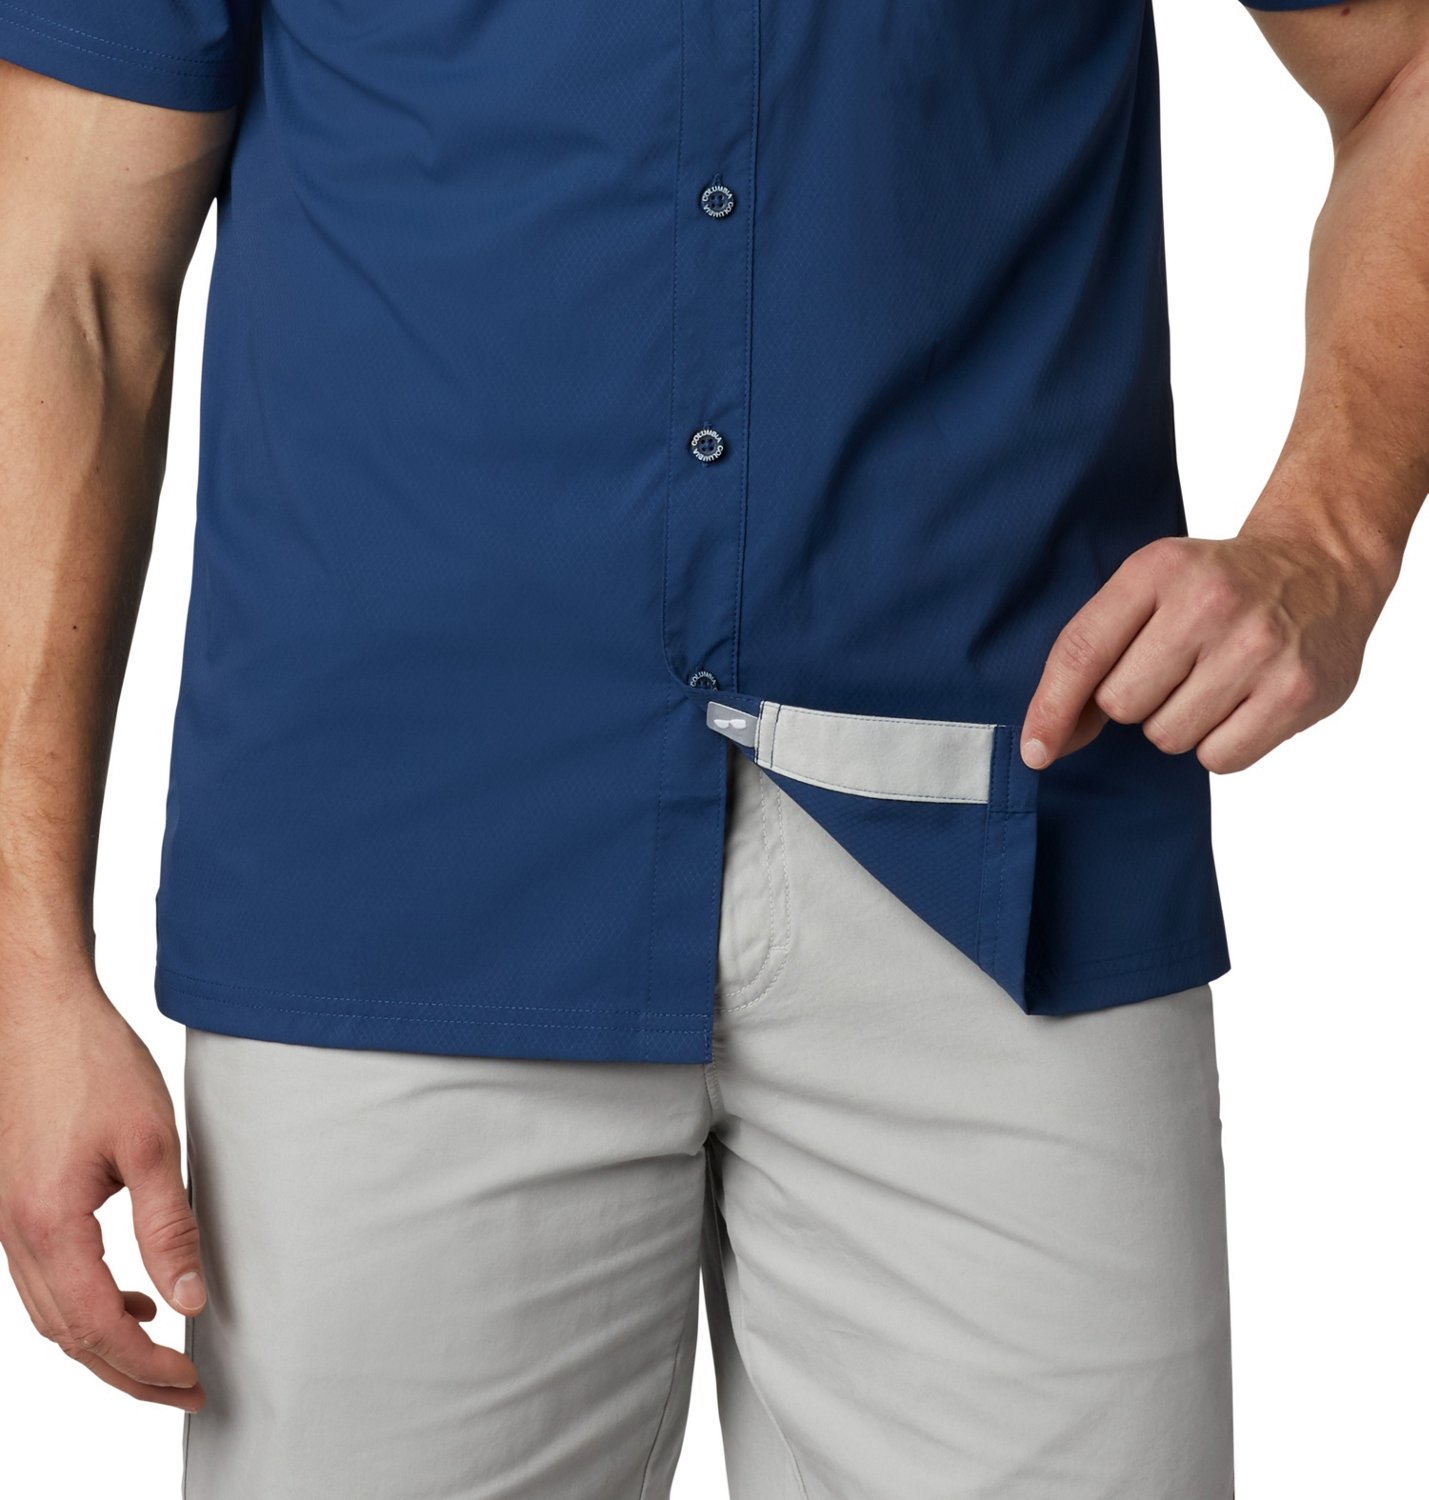 Men's PFG Slack Tide™ Camp Shirt